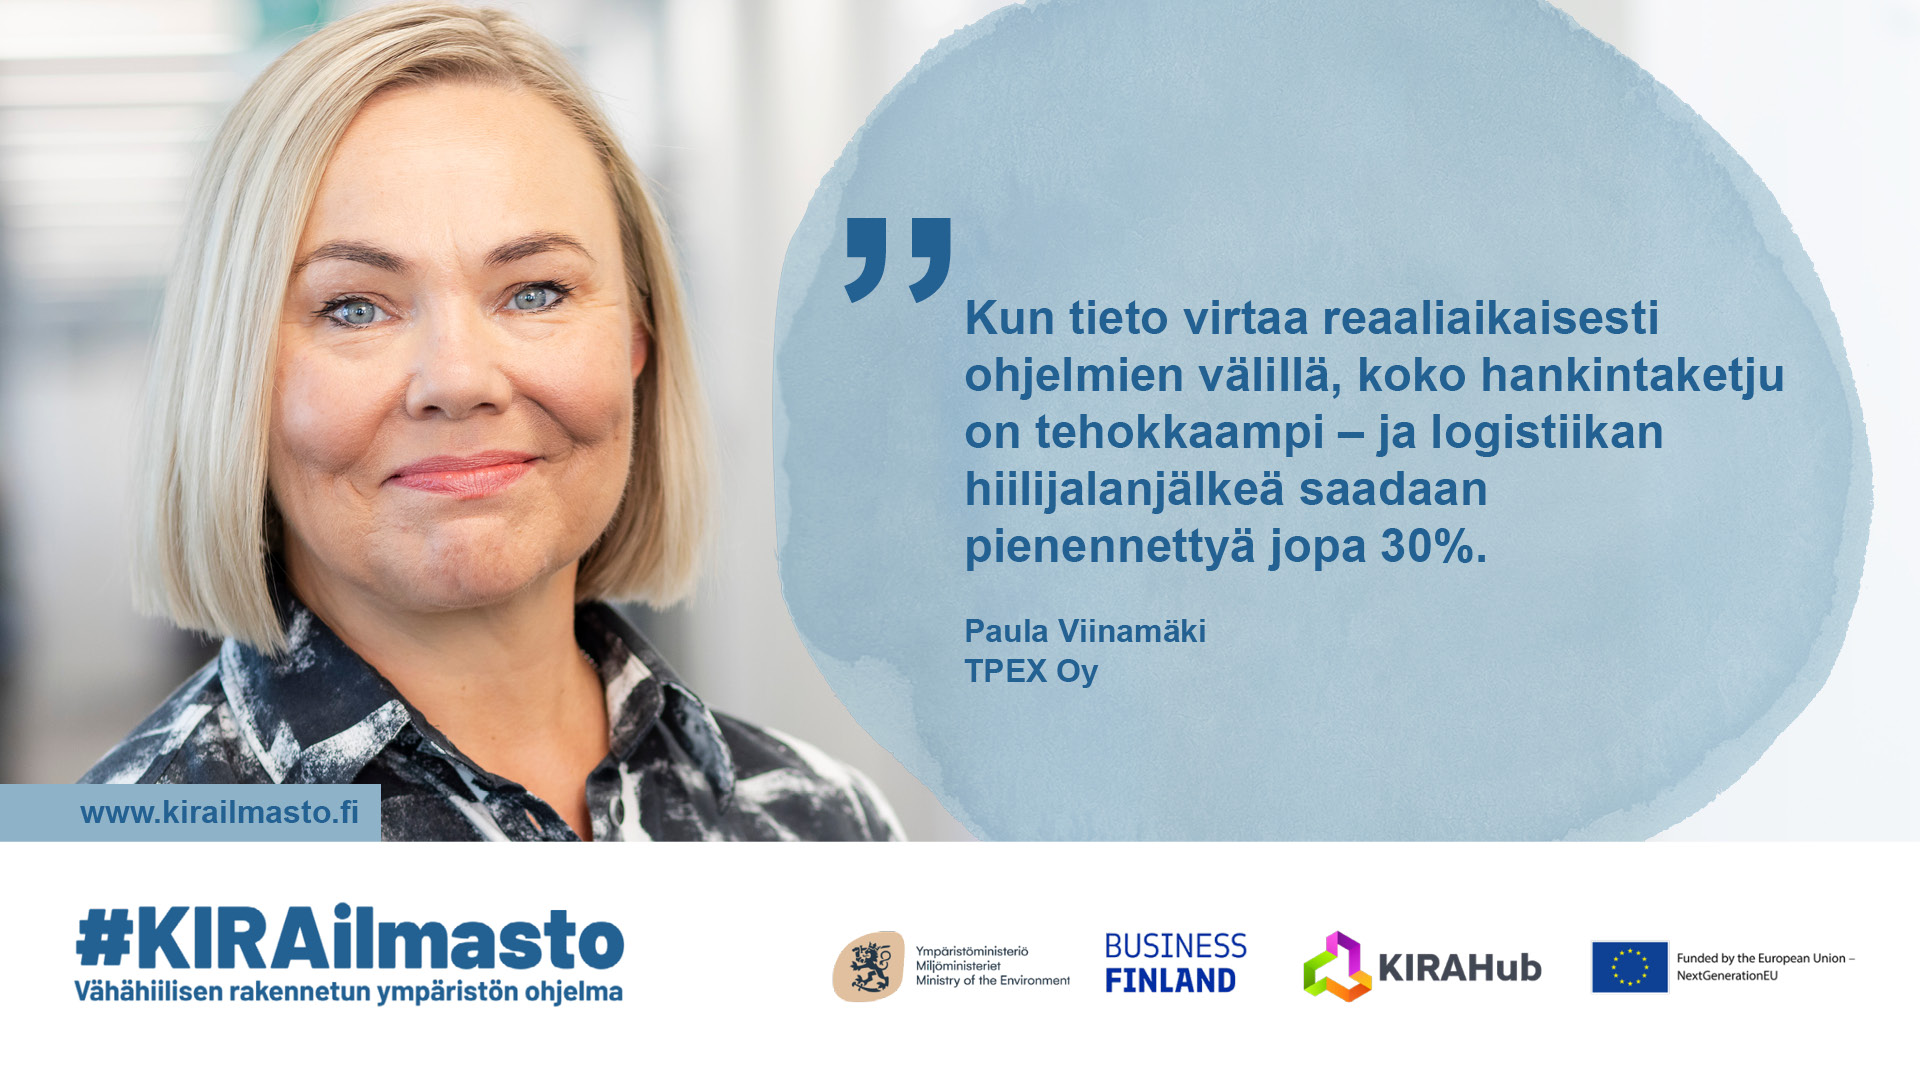 Paula Viinamäki, sitaatti: "Kun tieto virtaa reaaliaikaisesti ohjelmien välillä, koko hankintaketju on tehokkaampi - ja logistiikan hiilijalanjälkeä saadaan pienennettyä jopa 30 %."